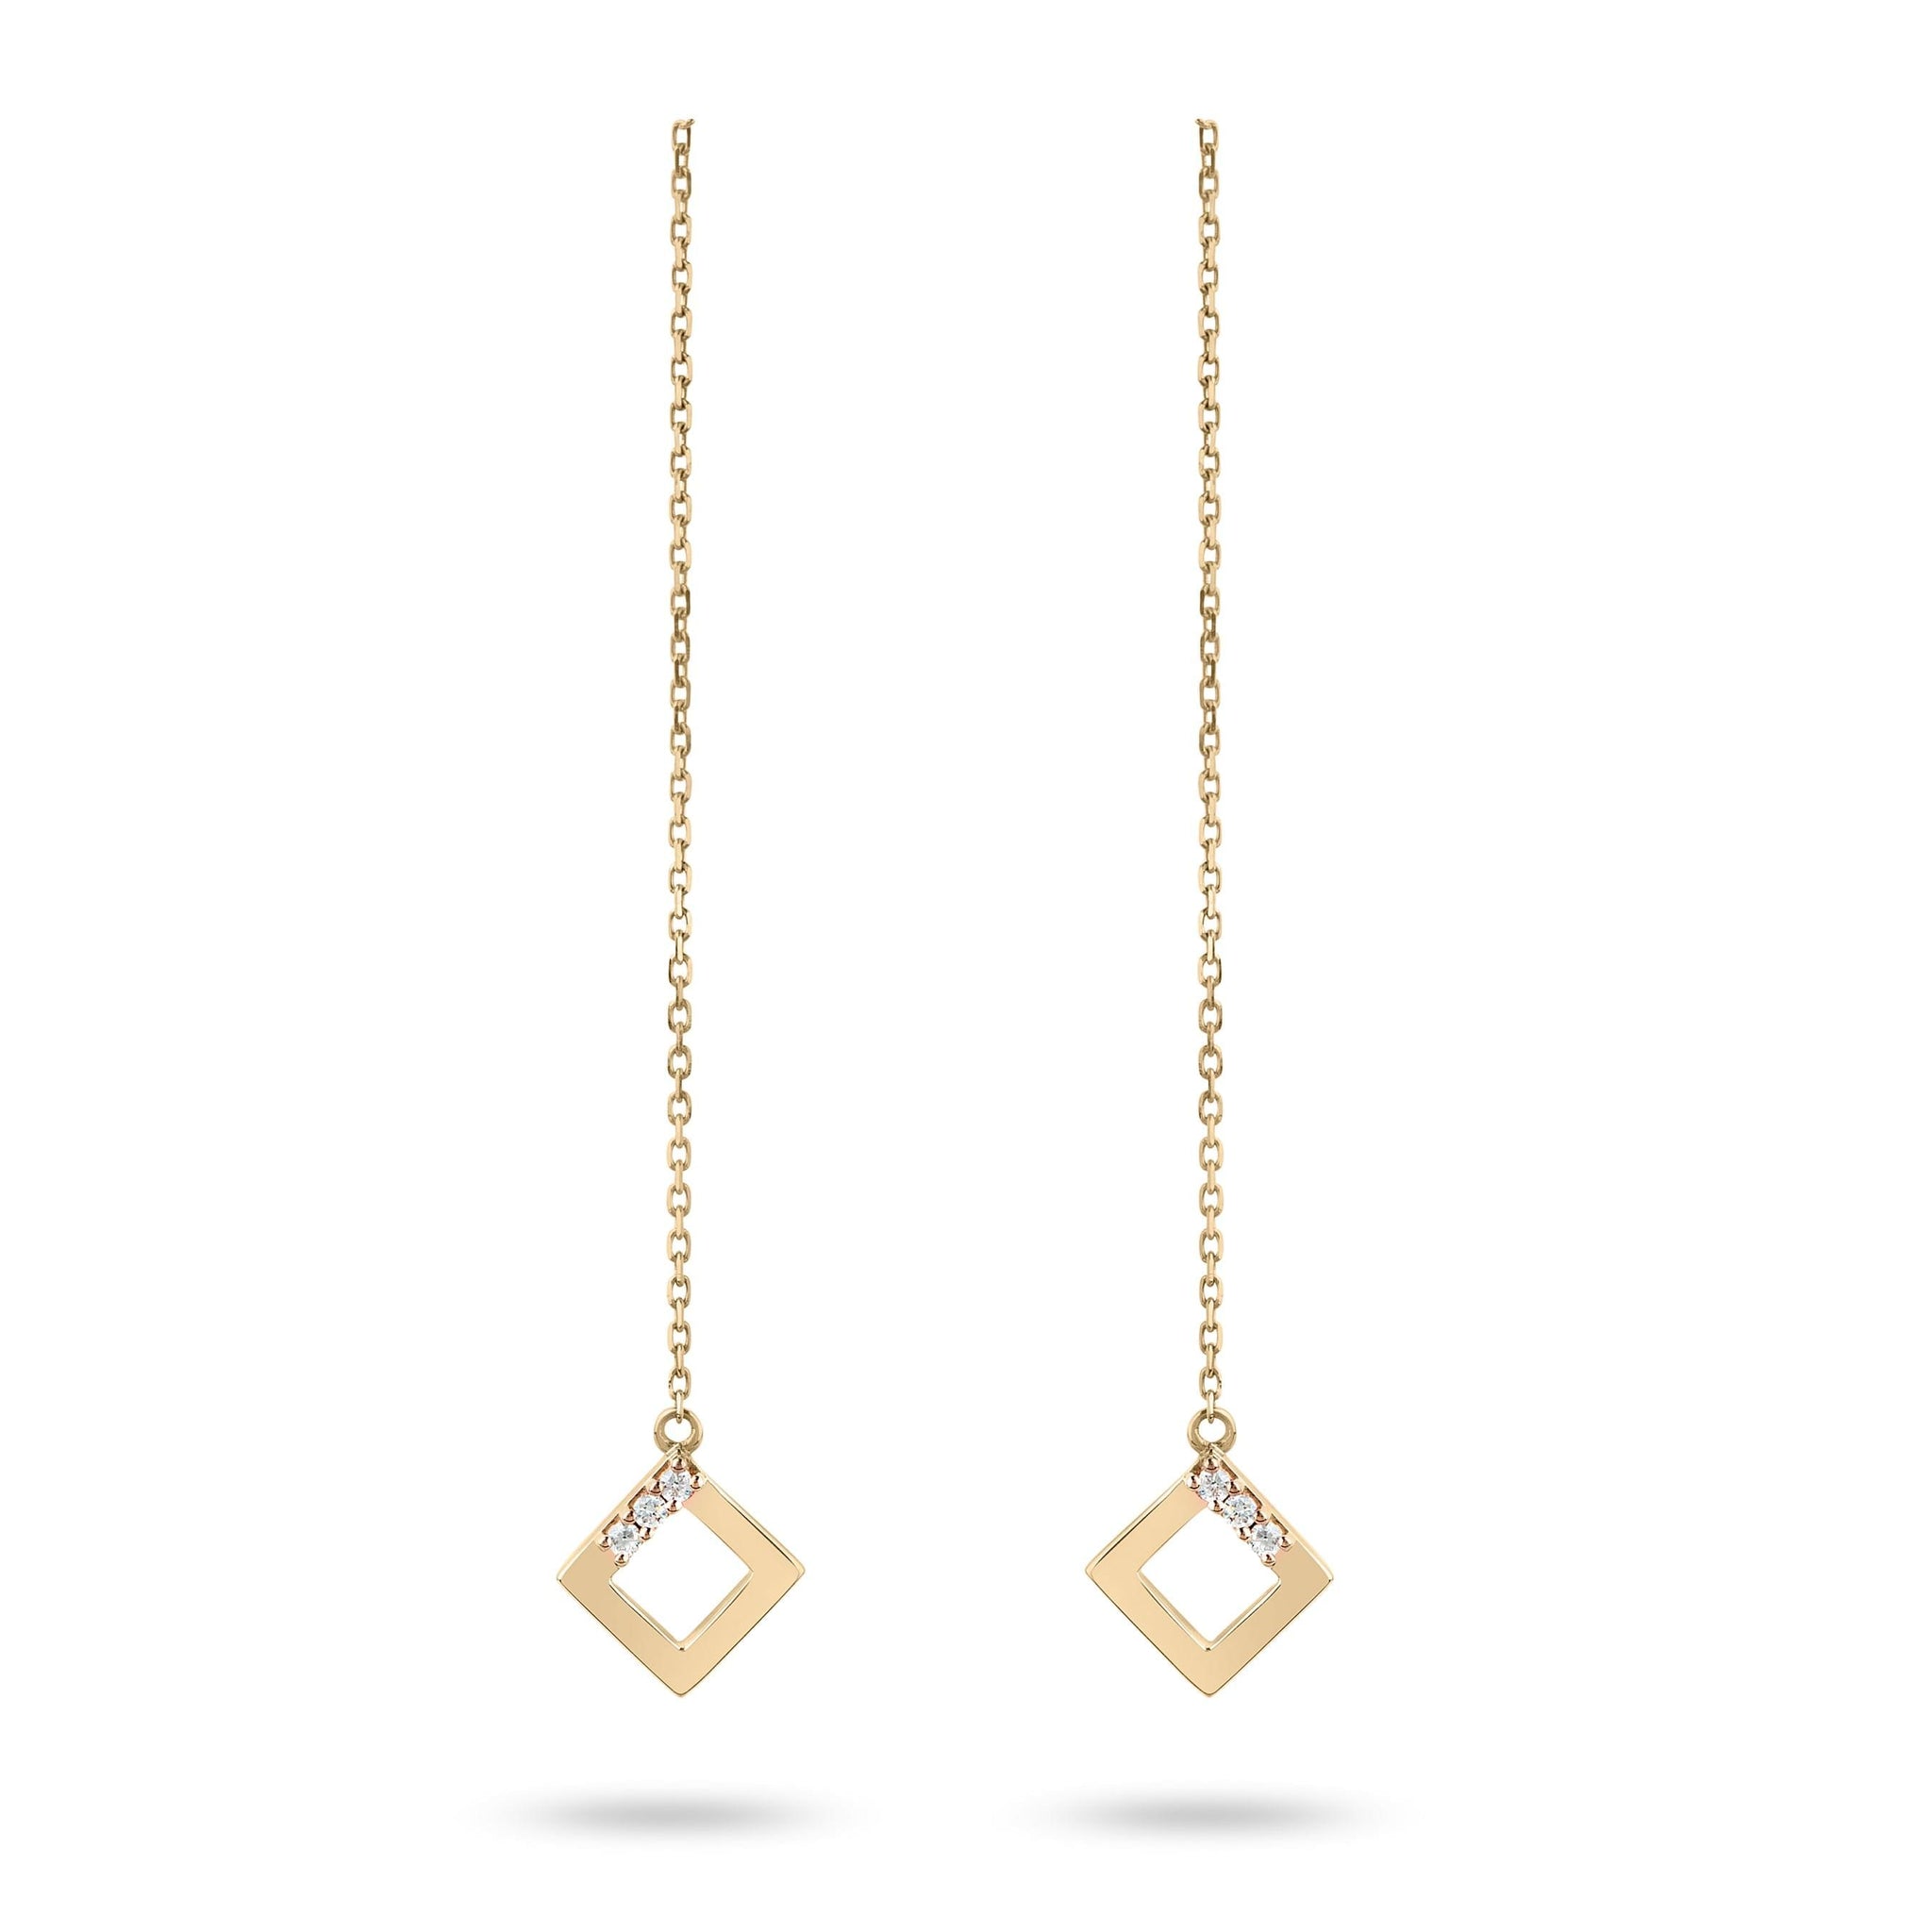 Geo - Yellow Gold Chain Earrings - Ksenia Mirella Jewellery 